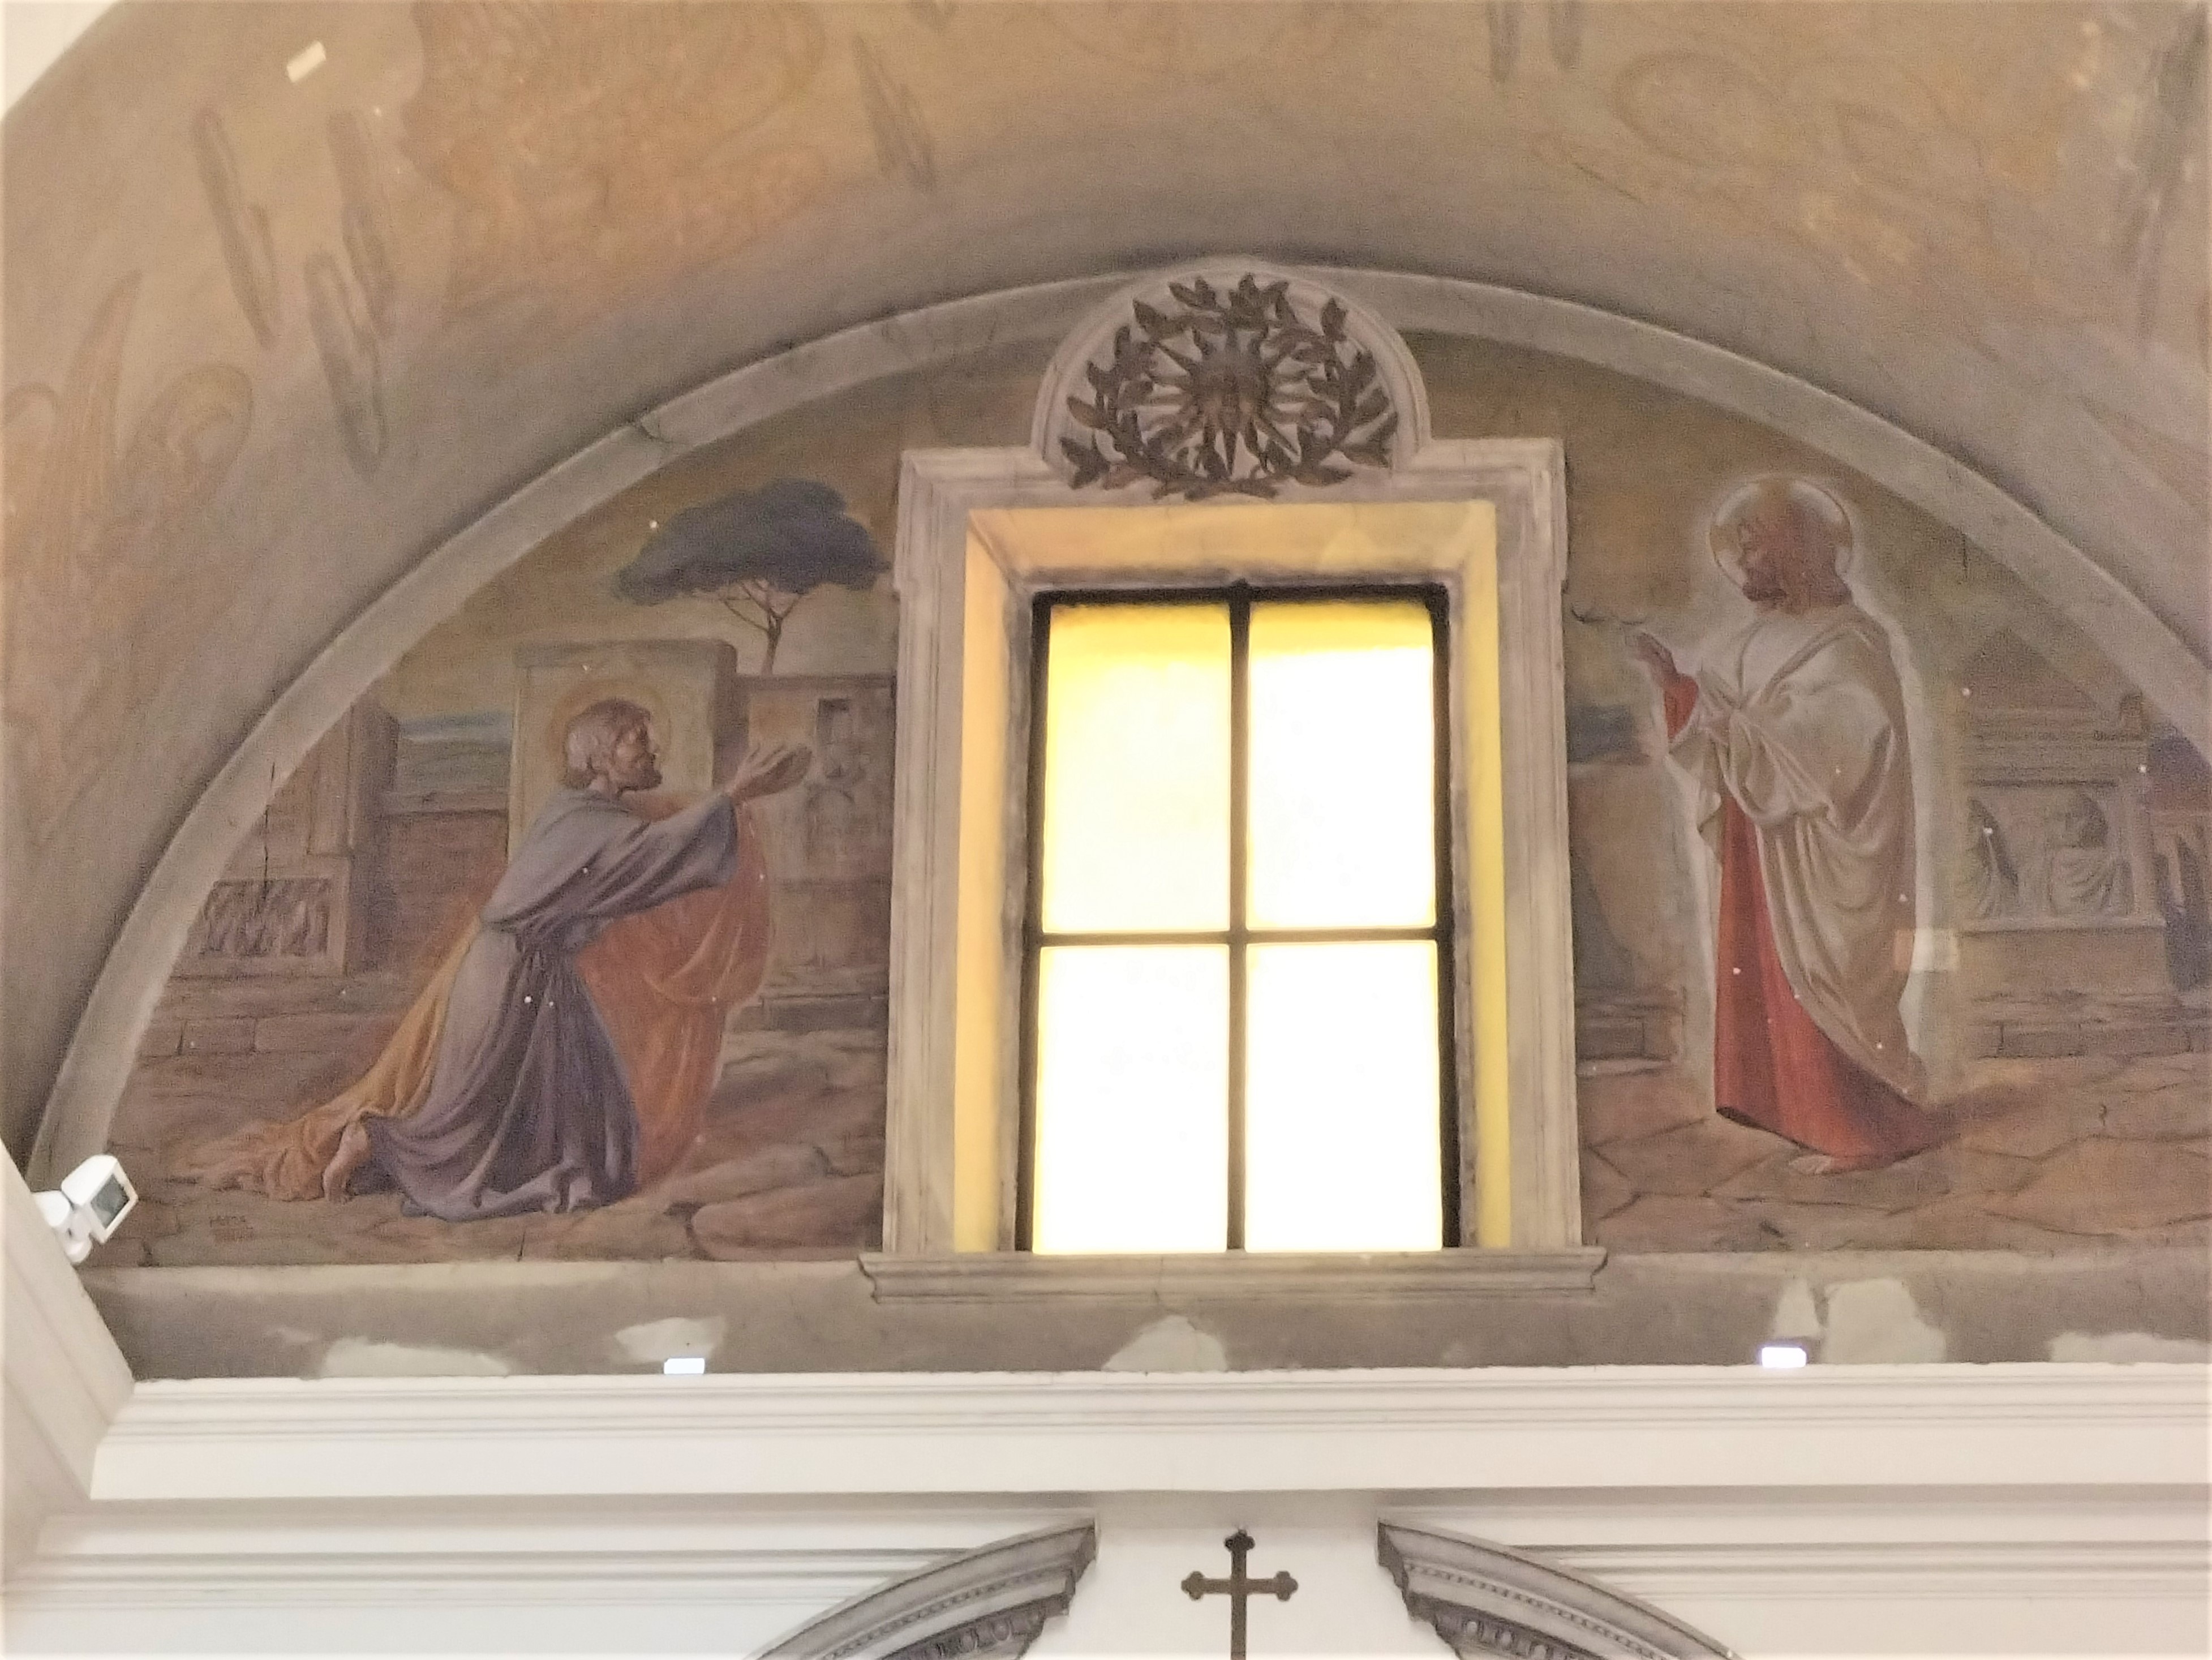 主壇上方壁畫——描繪彼得逃難之際，耶穌向他顯現的畫面。